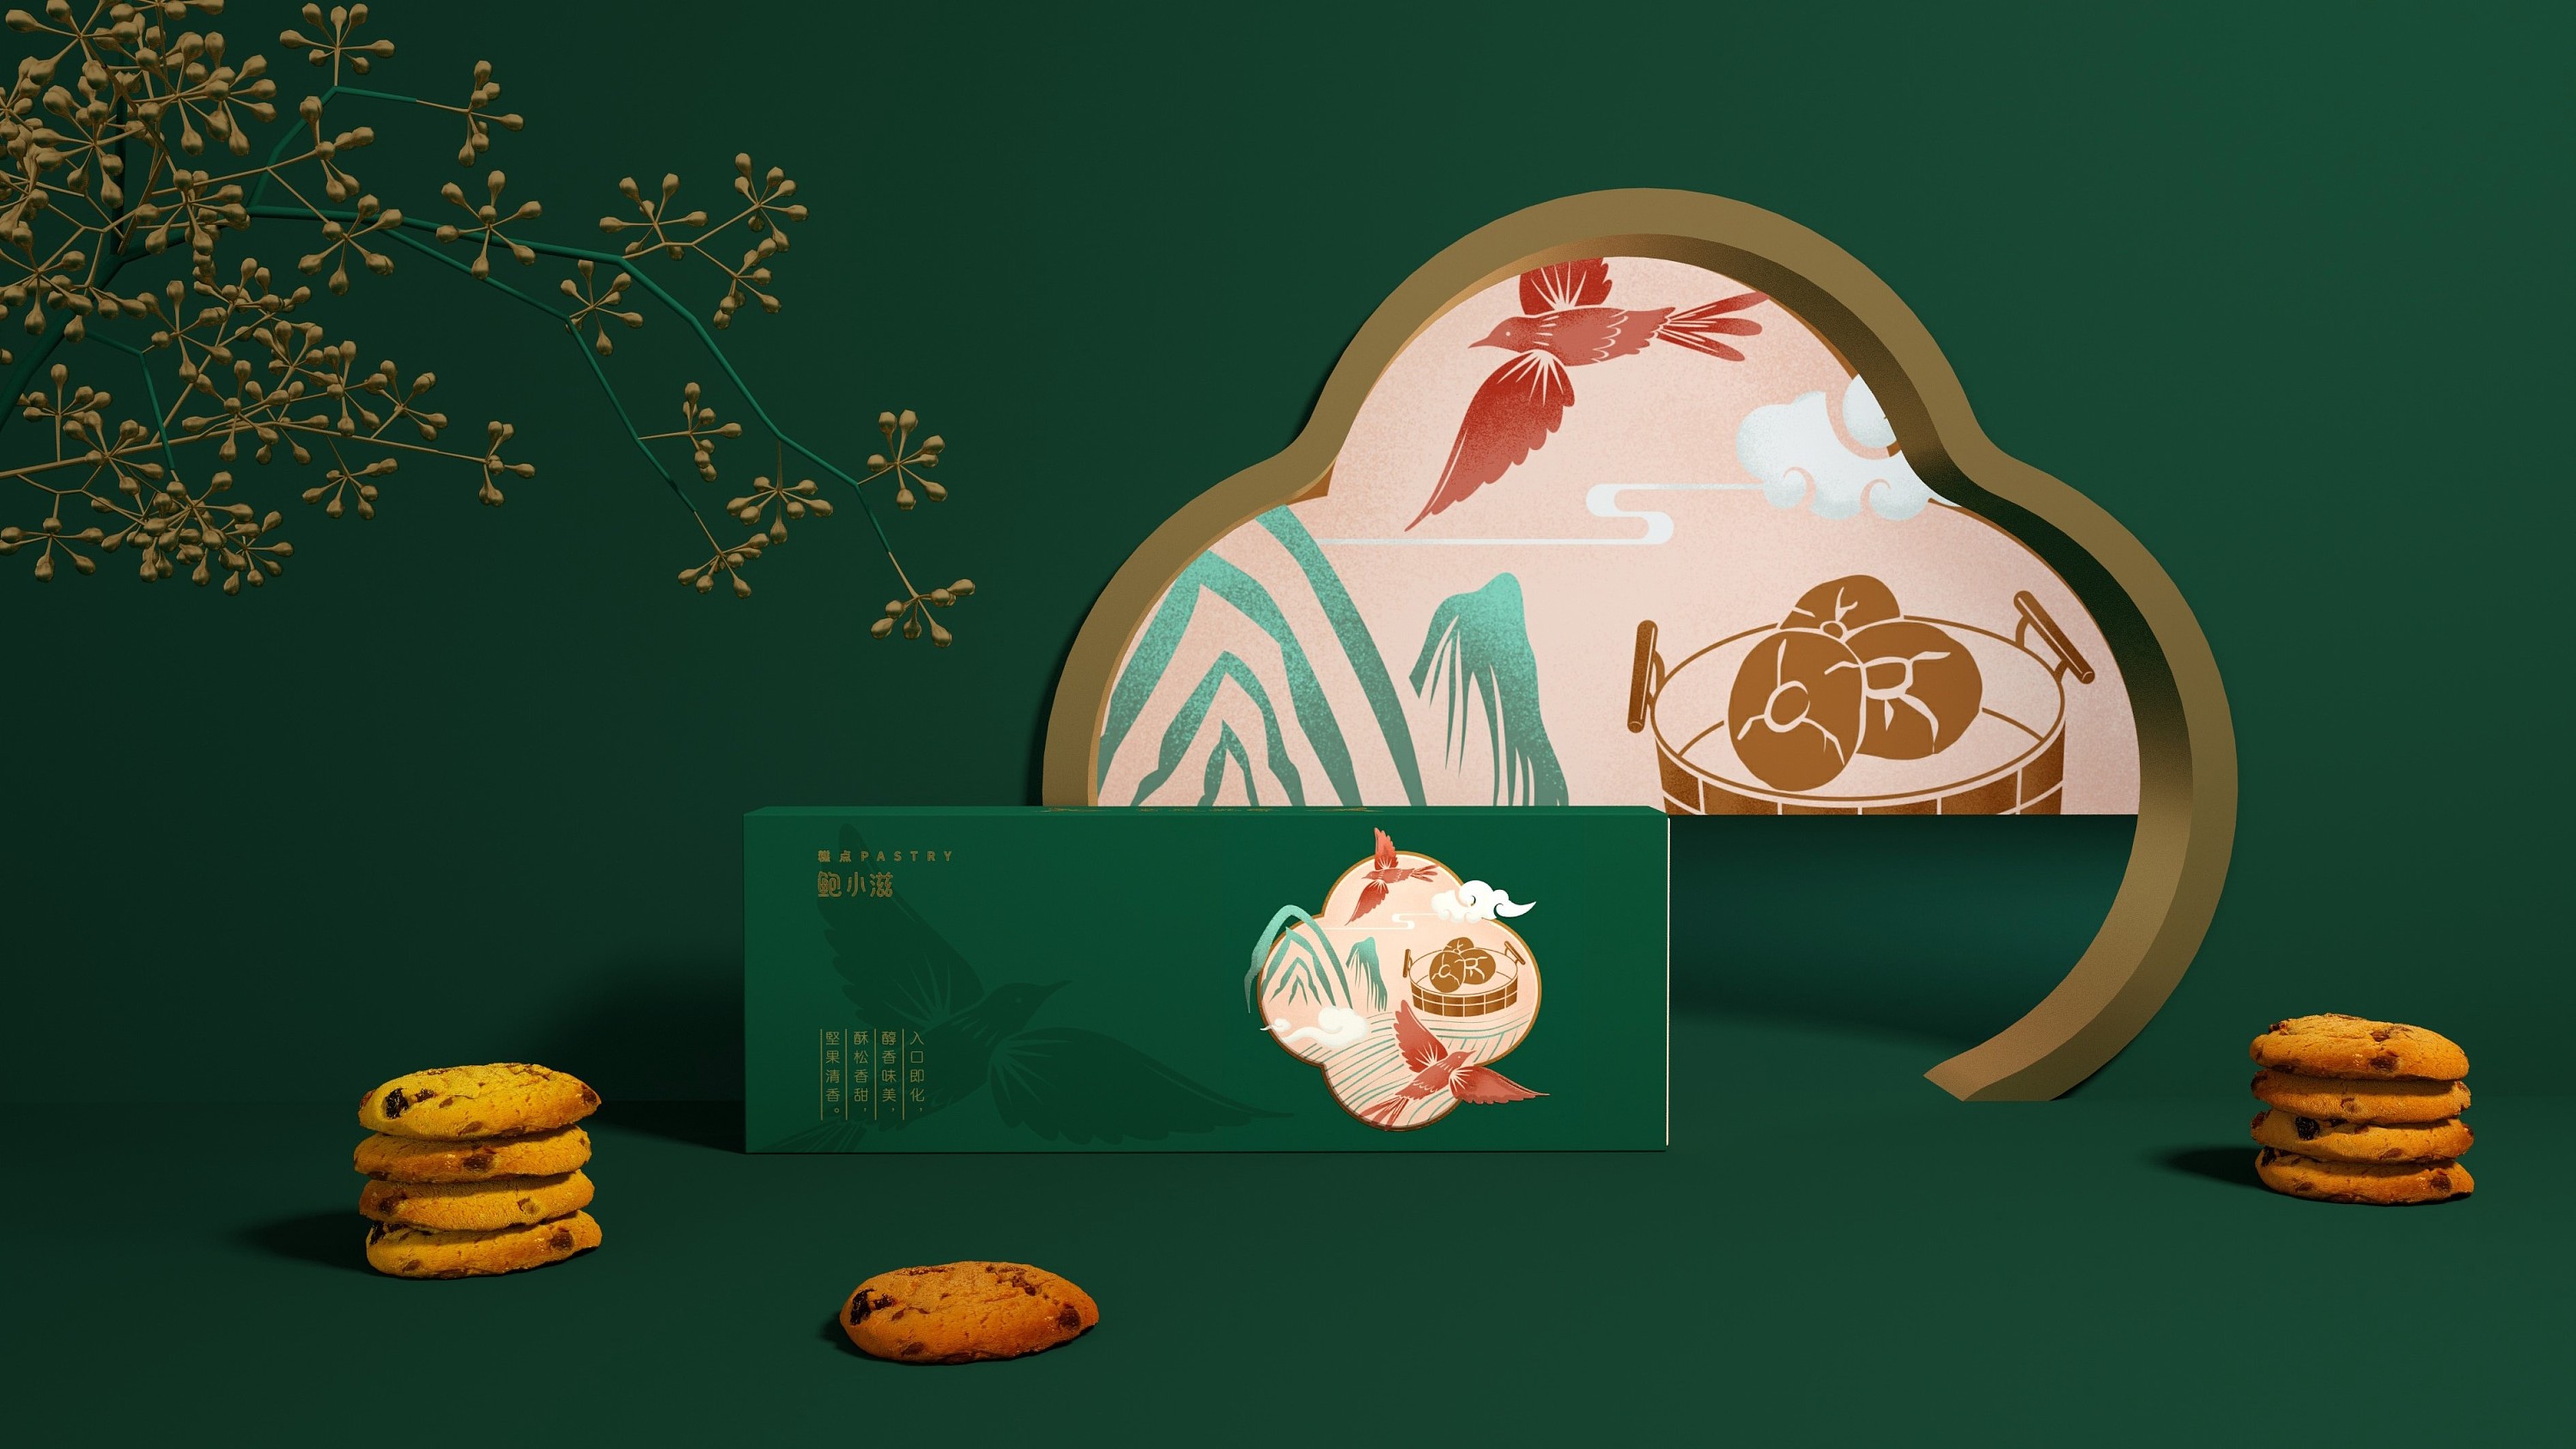 蓝色一页平面作品 | 鲍小滋,新中式糕点包装设计作品